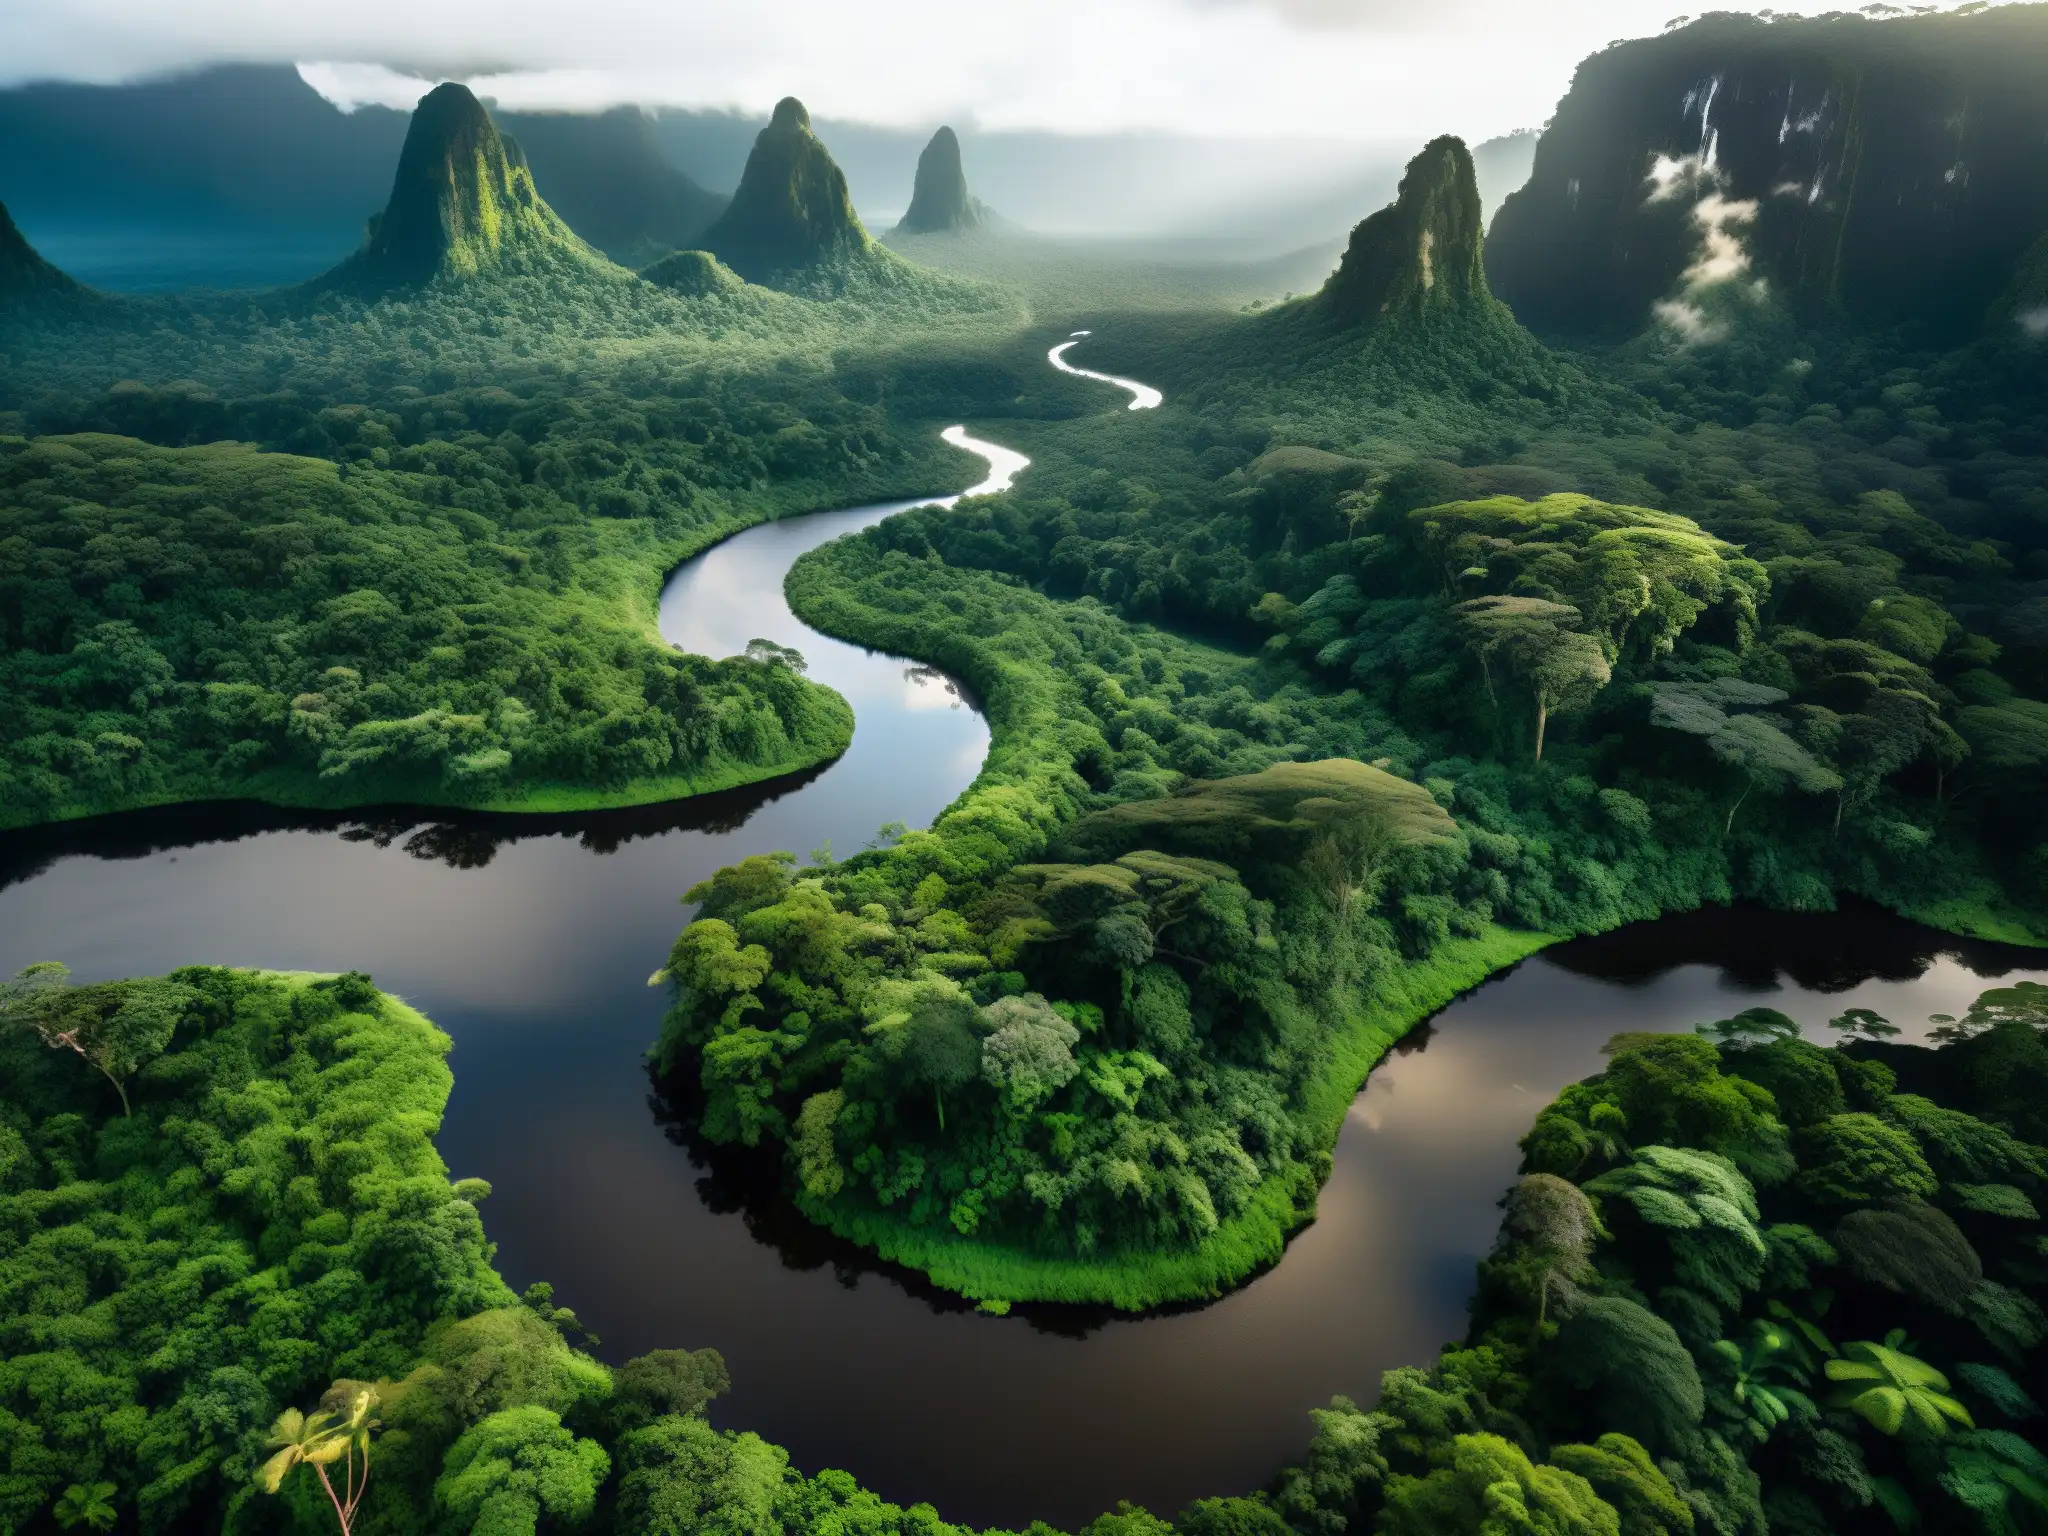 Imagen de la exuberante selva del Amazonas, con árboles majestuosos, un río serpenteante y la esencia de la Yacumama, serpiente gigante Amazonas